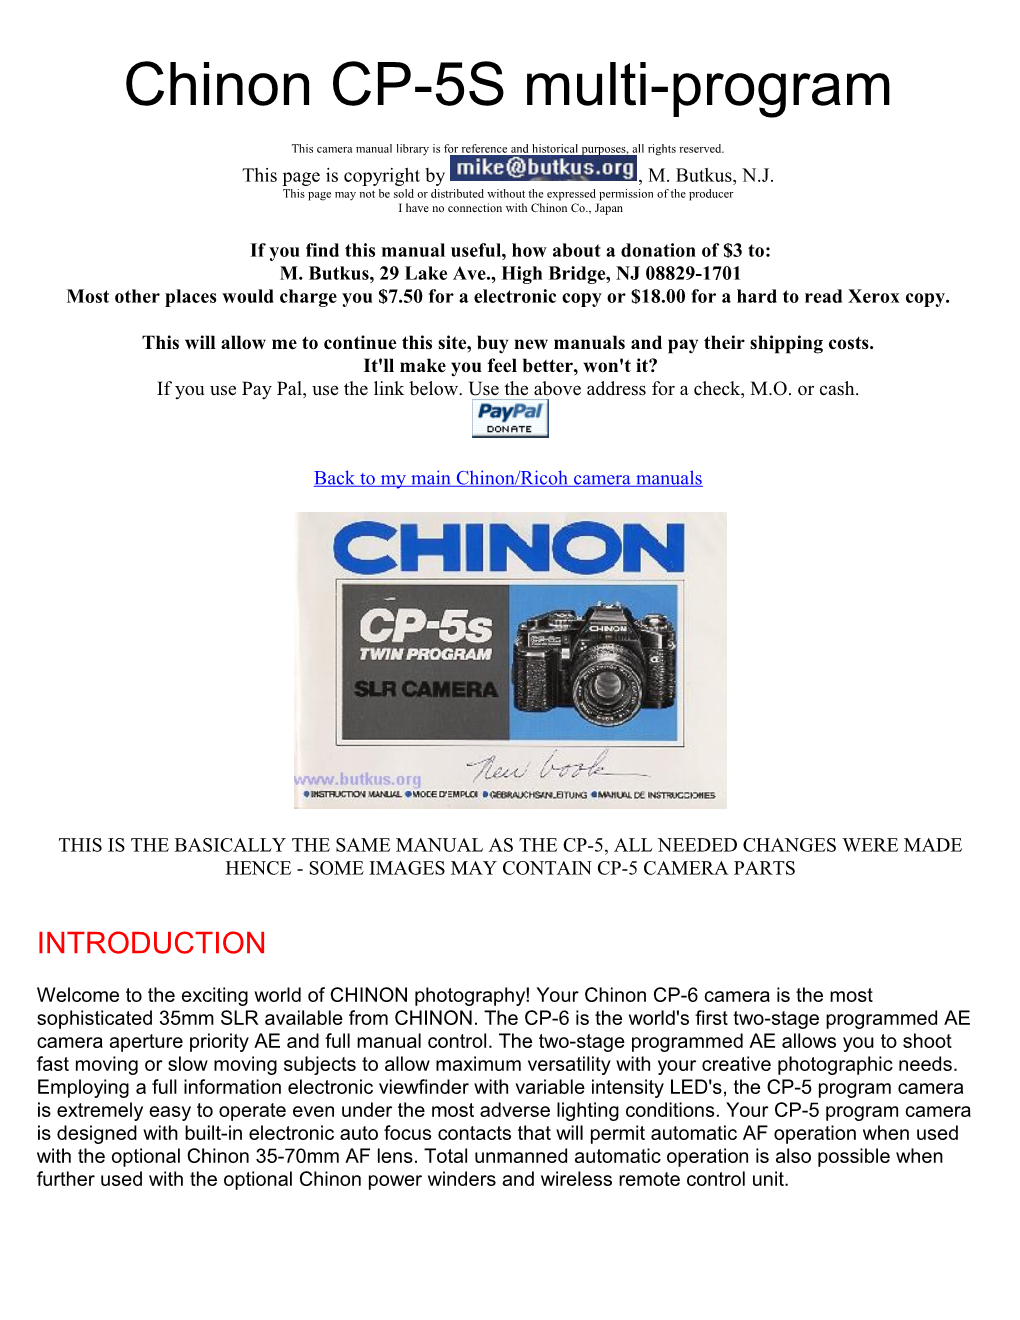 Chinon CP-5S Multi-Program